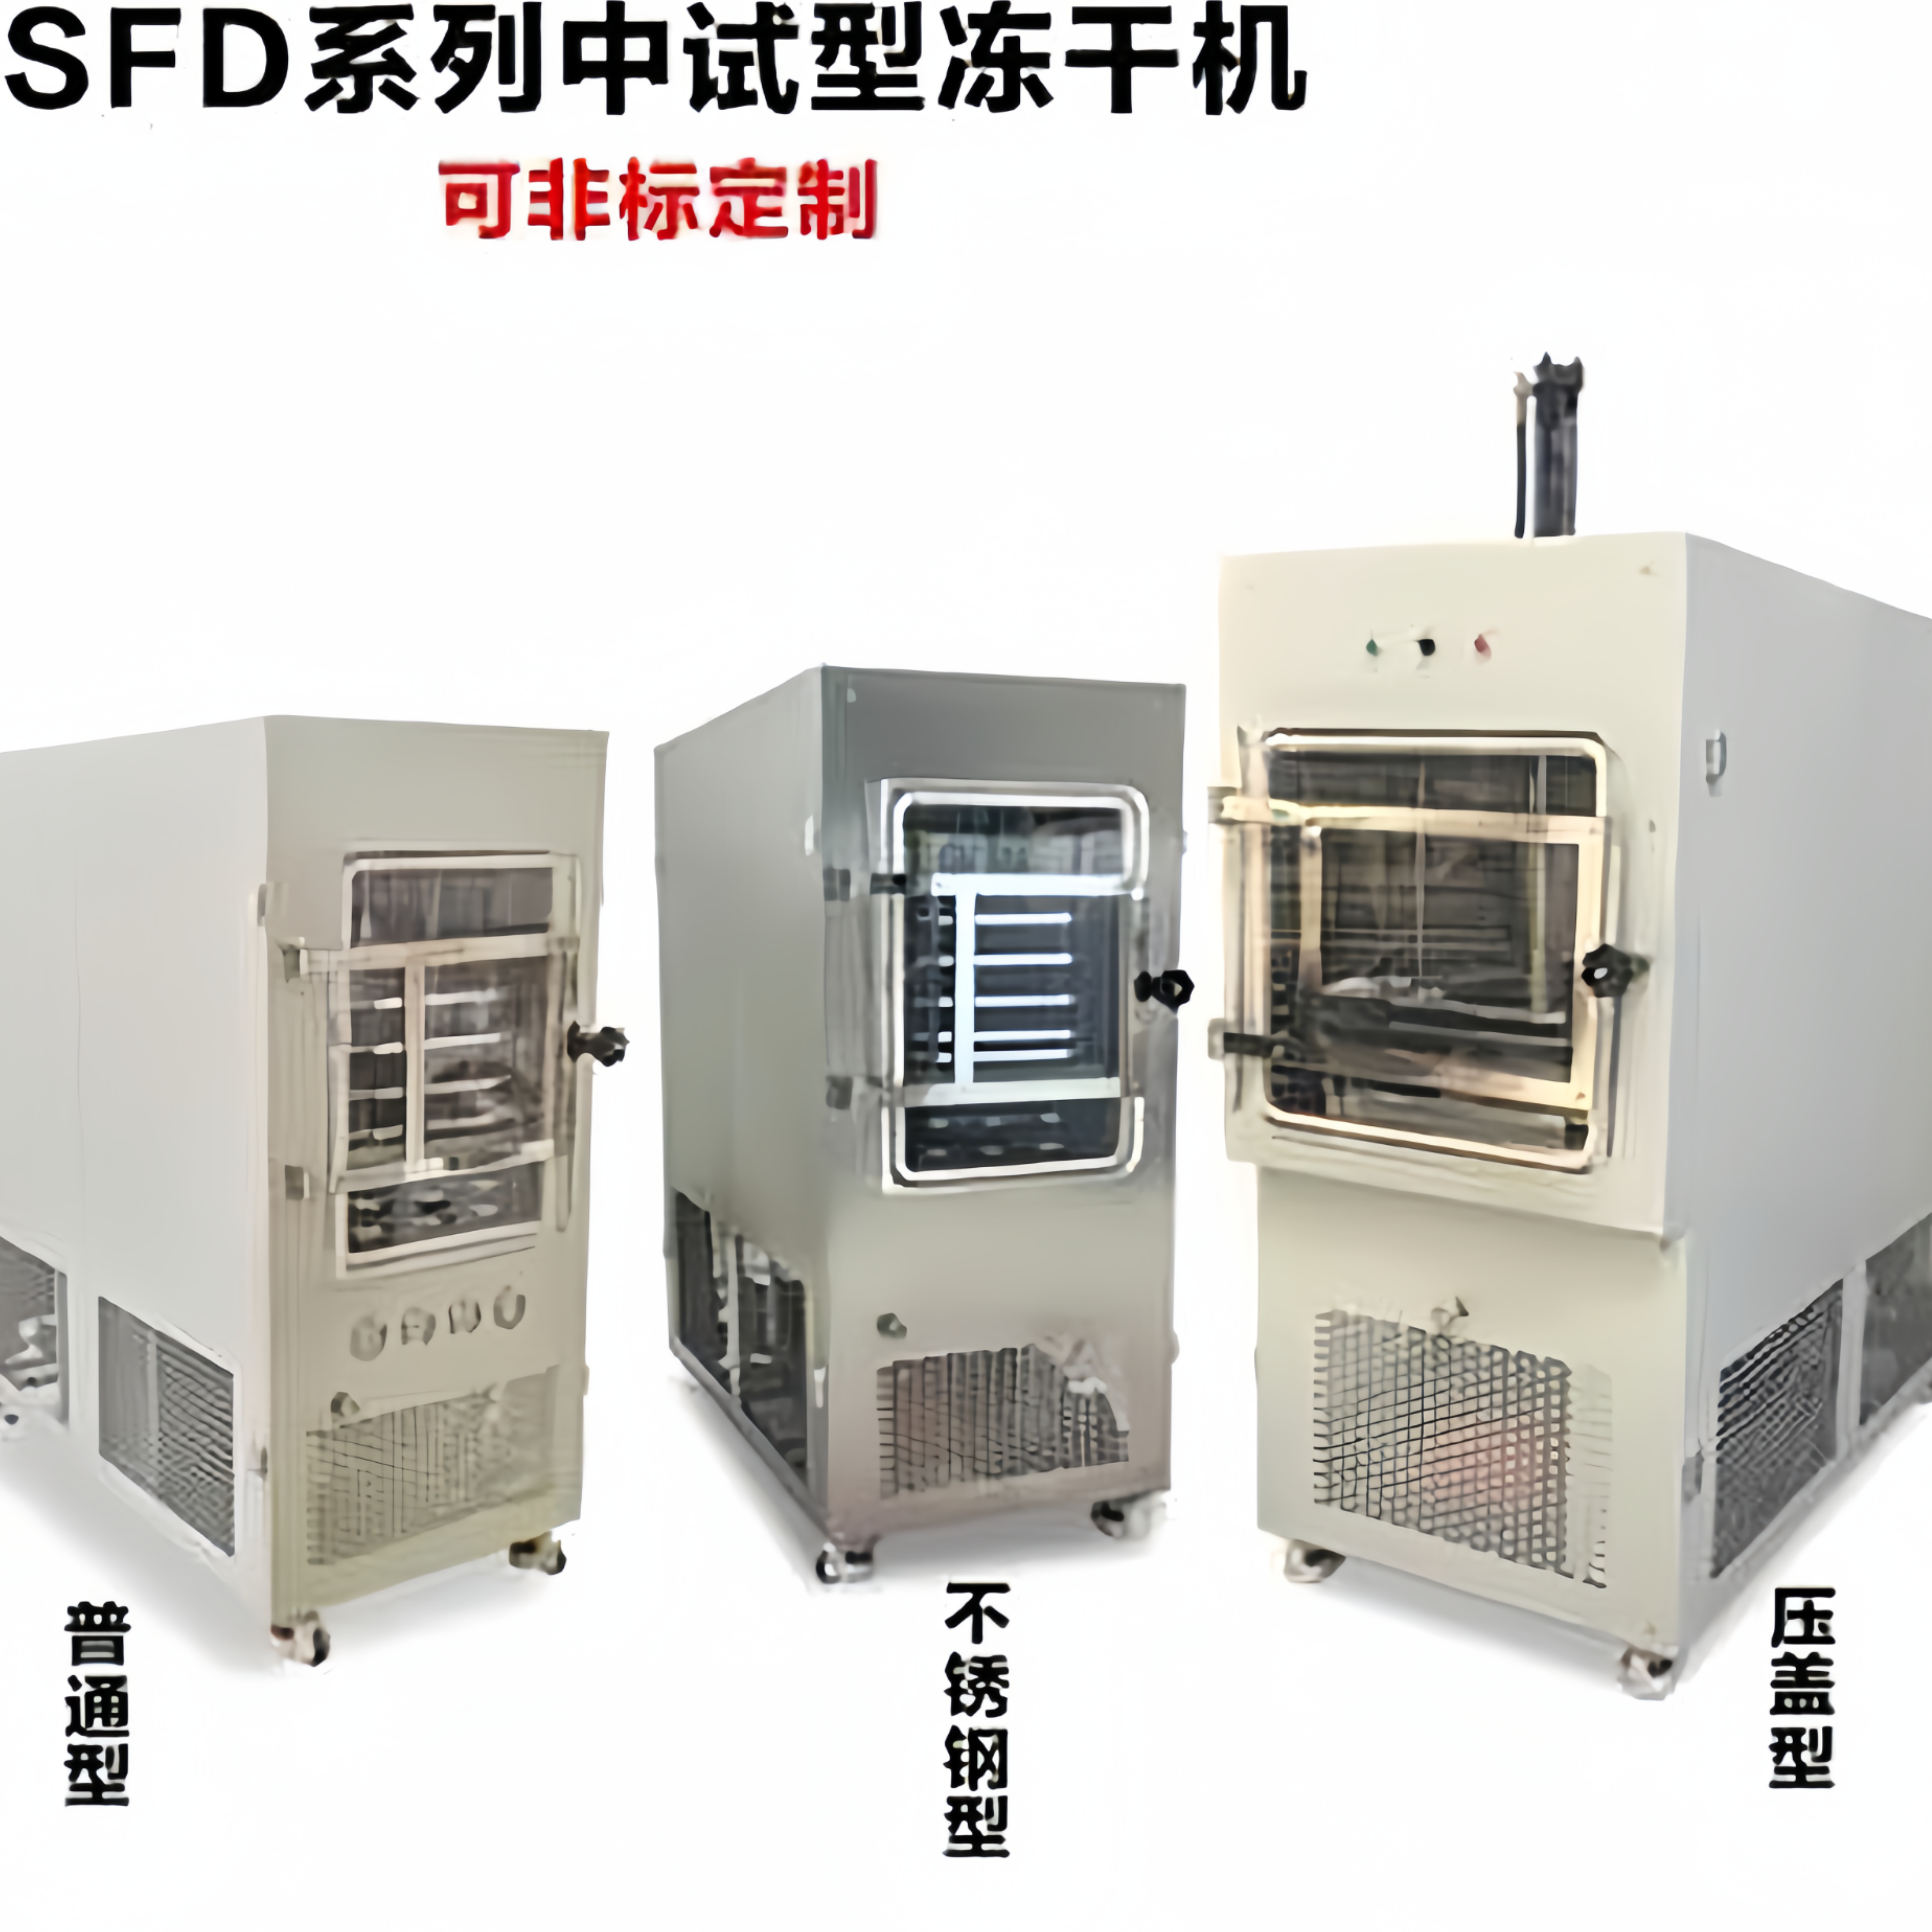 田枫粉针冷冻干燥机  实验室生产型冻干机TF-SFD-5